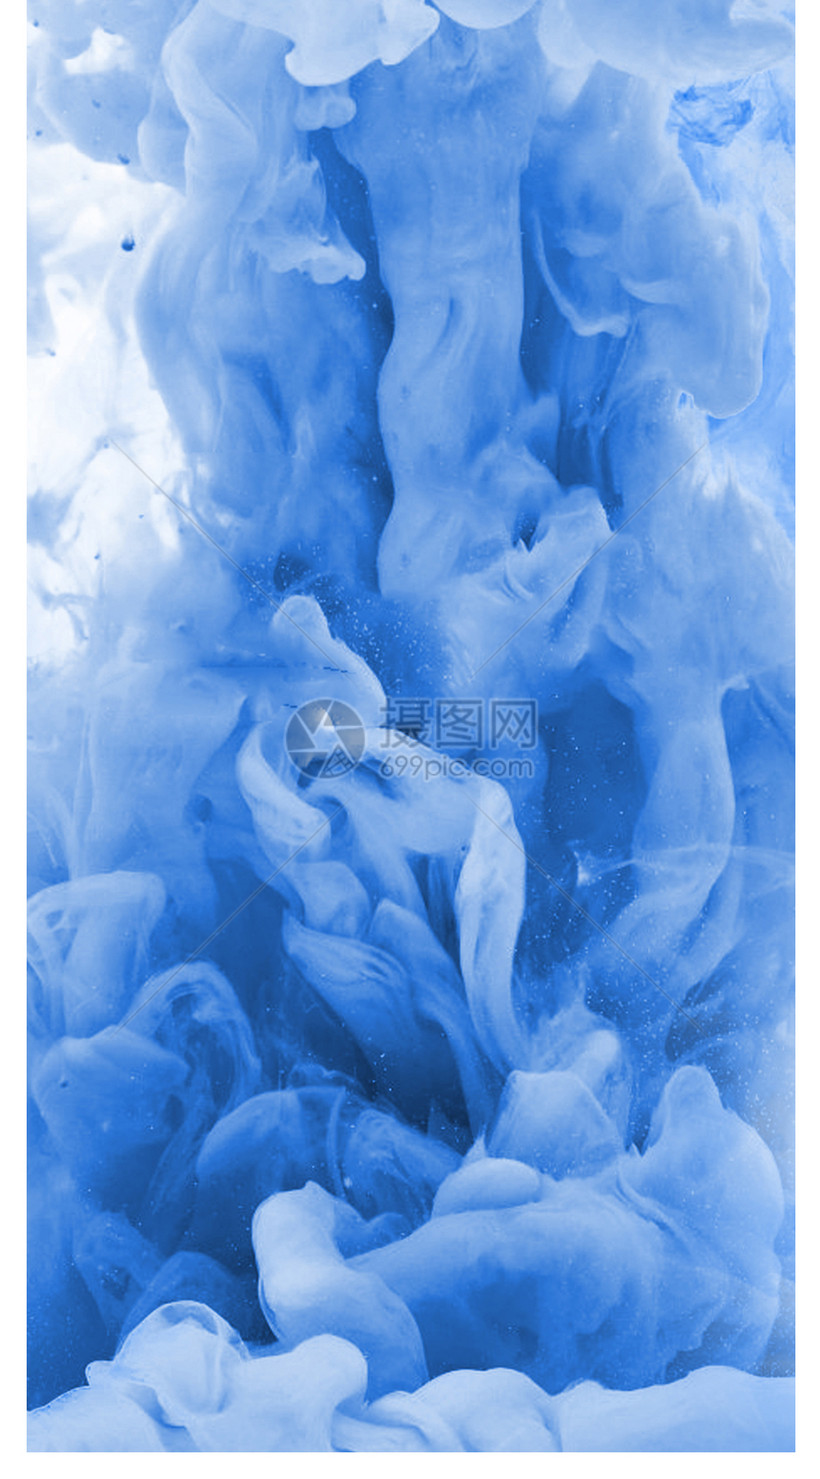 蓝色烟雾手机壁纸模板素材 正版图片 摄图网